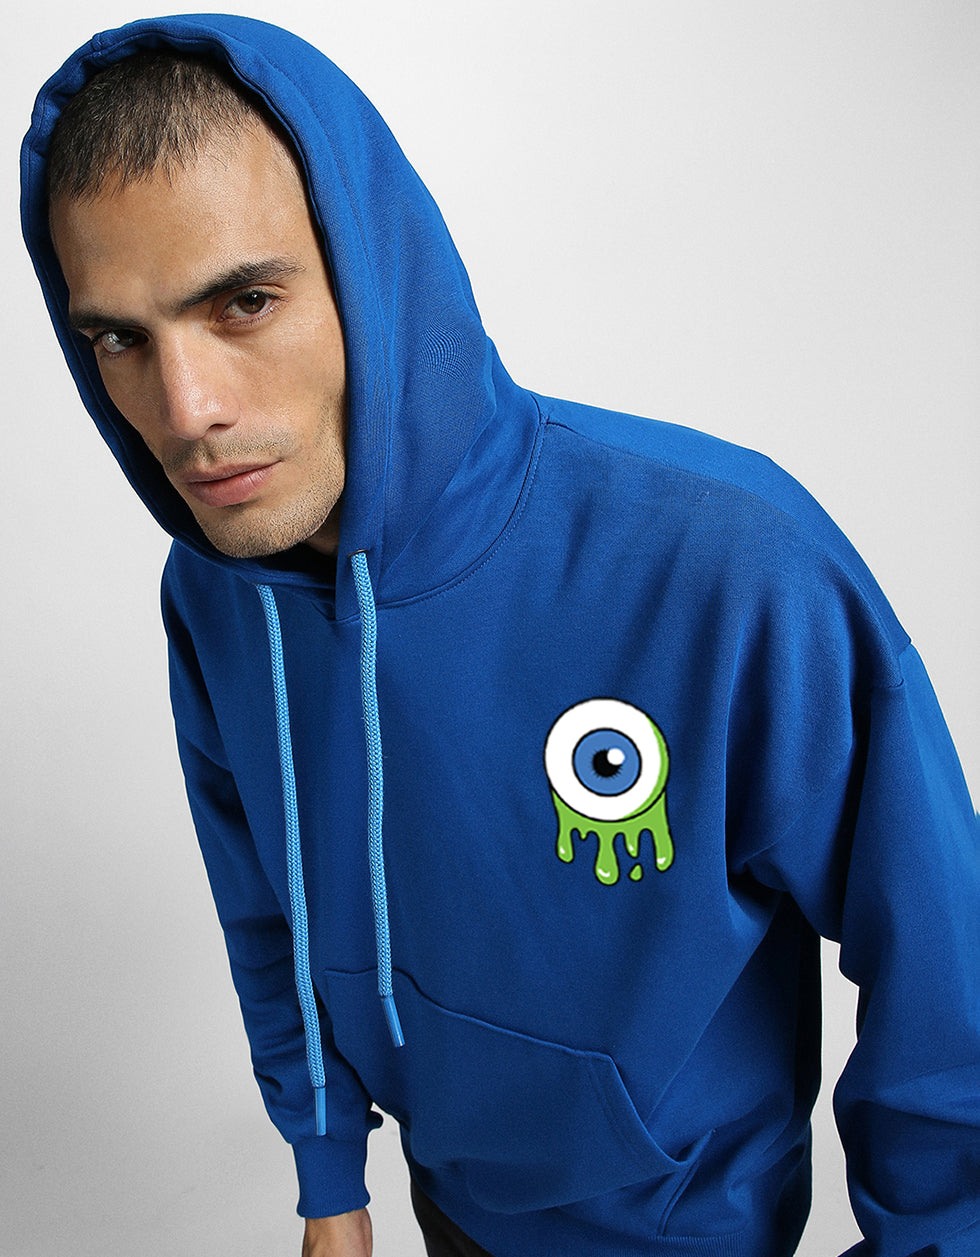 Eyes on Style: Men's Blue Hoodie with Eye Print Veirdo